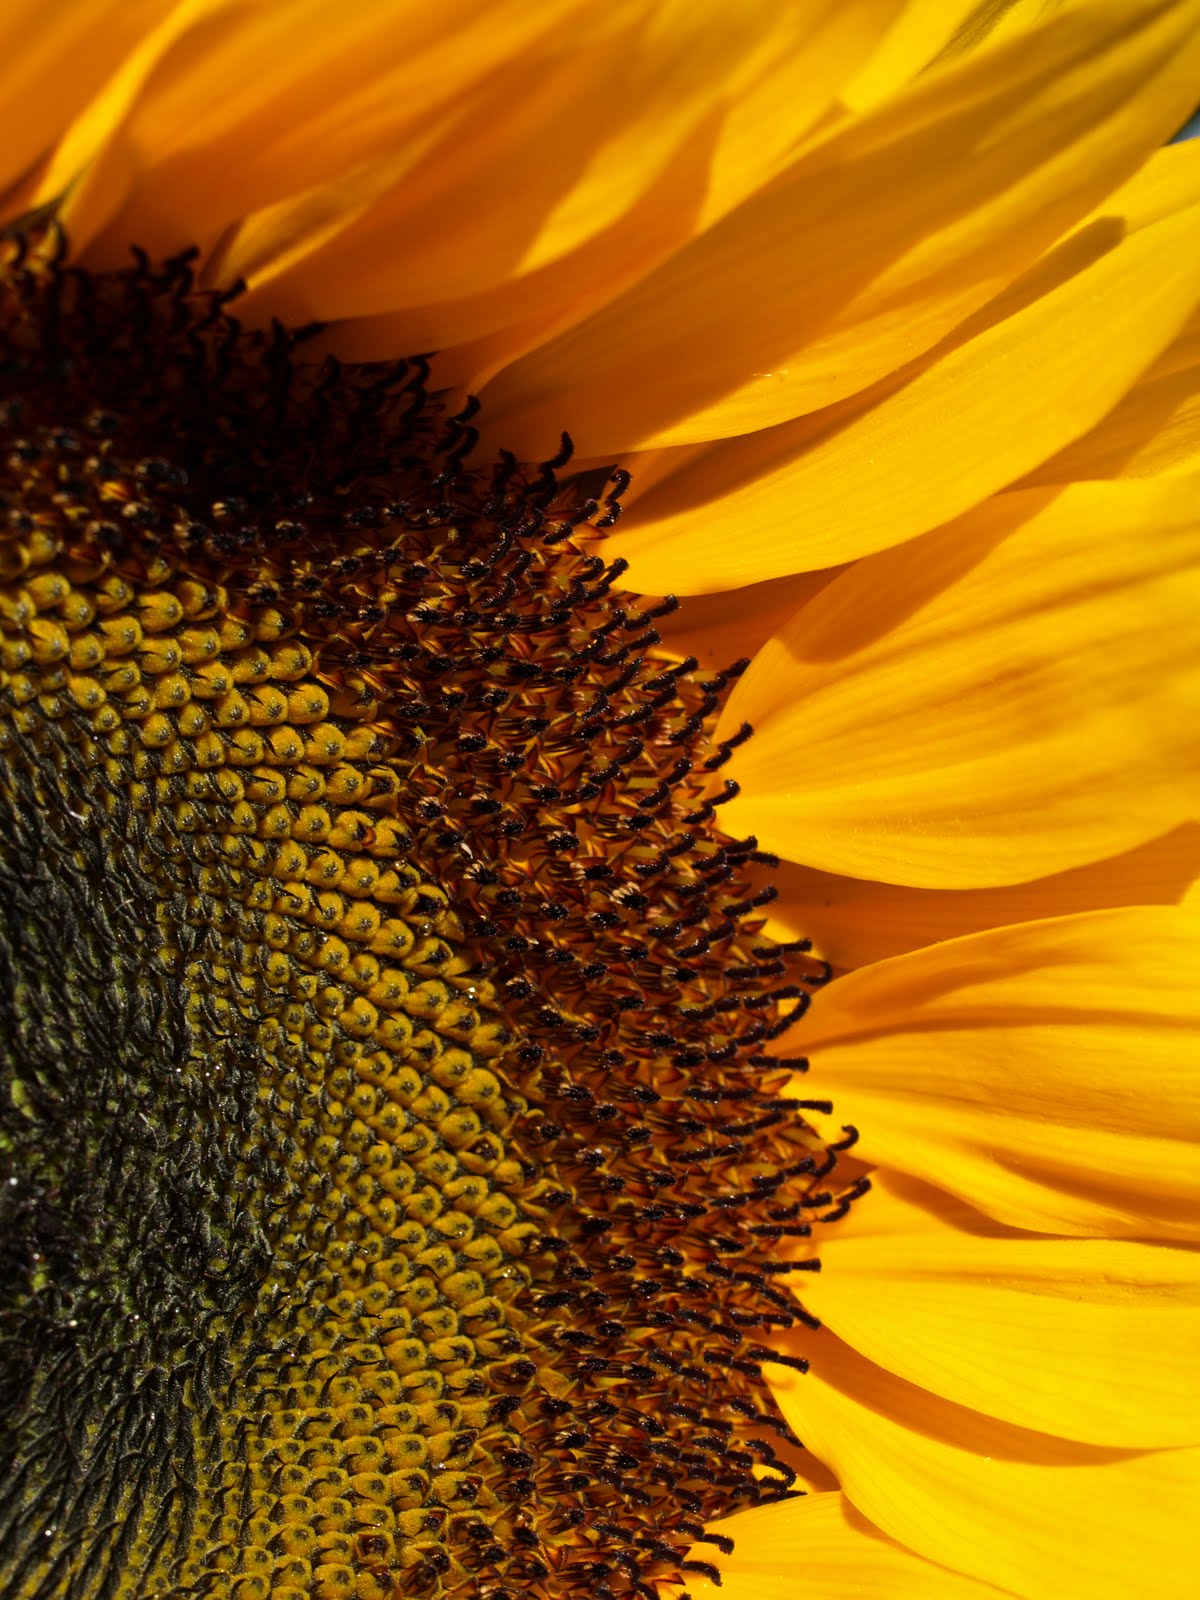 Resultado de imagem para sunflower macro | SUNFLOWERS | Pinterest ...